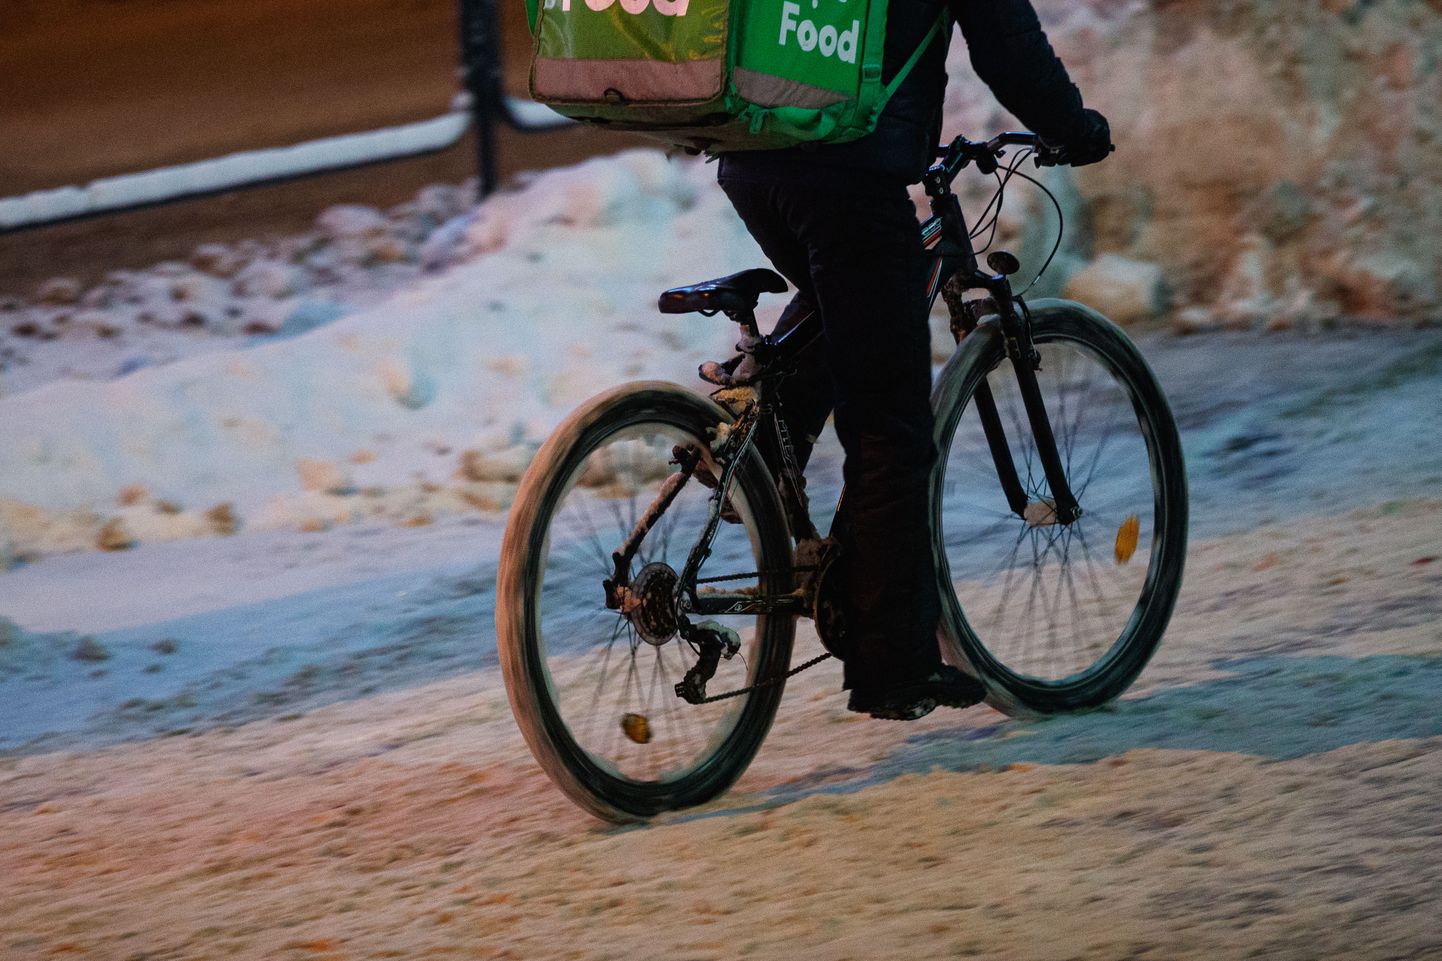 Курьер Bolt Food доставляет заказ клиенту на велосипеде (иллюстративное фото).